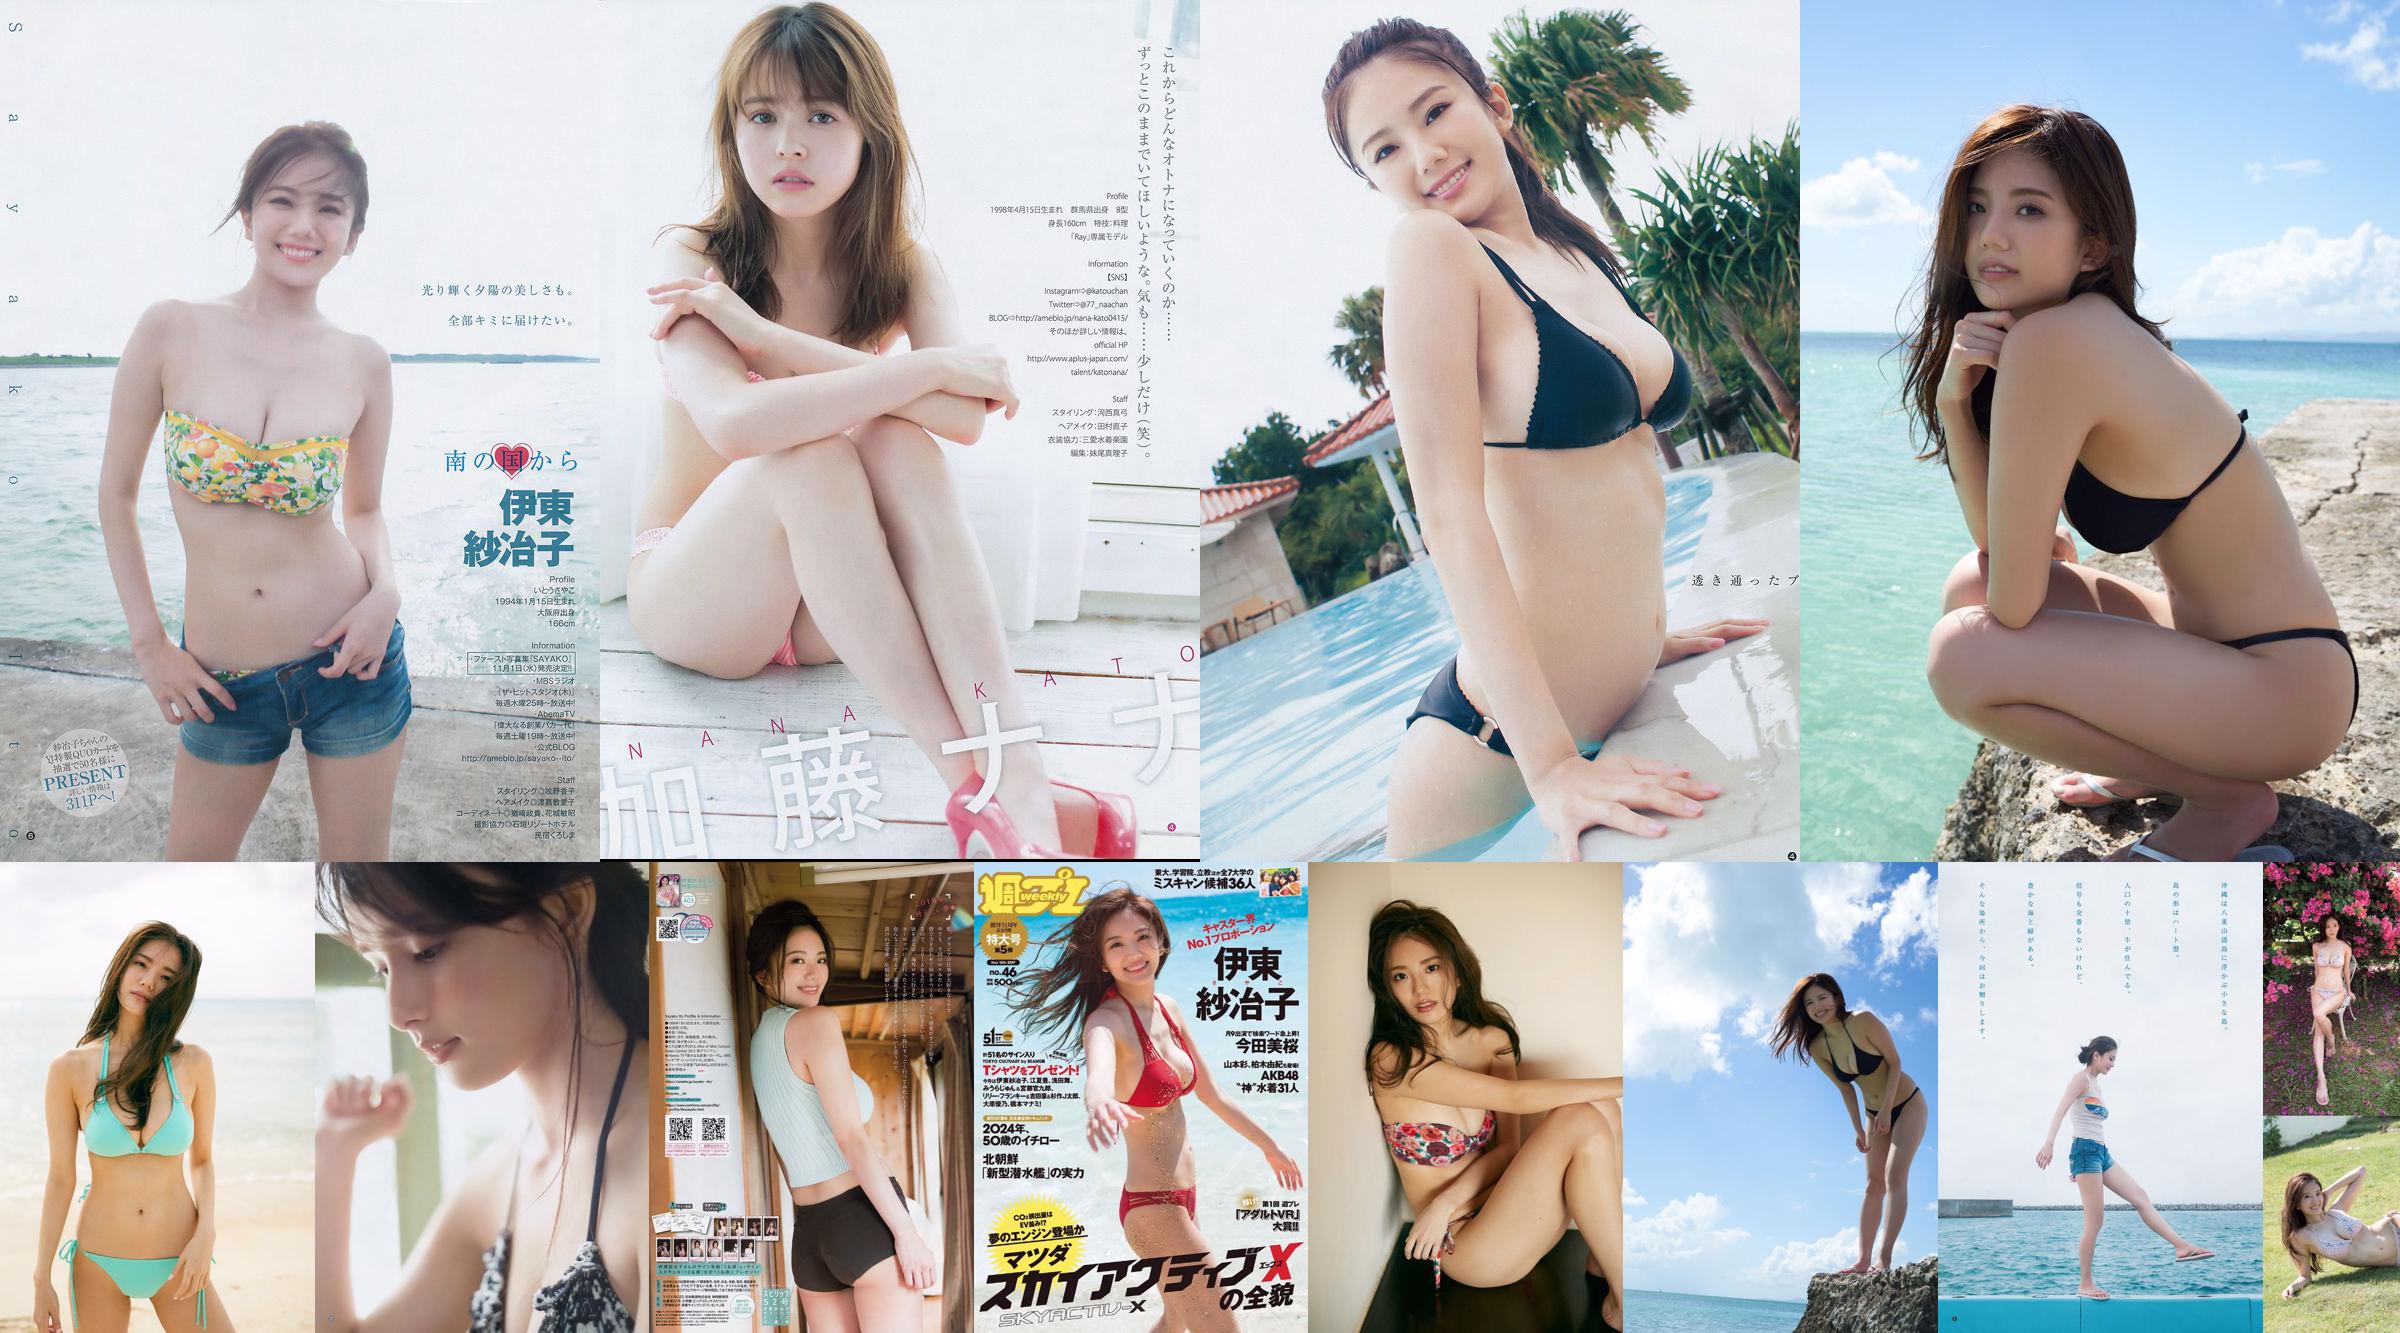 Ito Sayeko, Mima Reiko, Sugimoto Yumi, Sato Reina, Yoshiki りさ Toyama Akiko, Naninao [Weekly Playboy] 2016 No.36 Photo Magazine No.38e8a6 Page 1